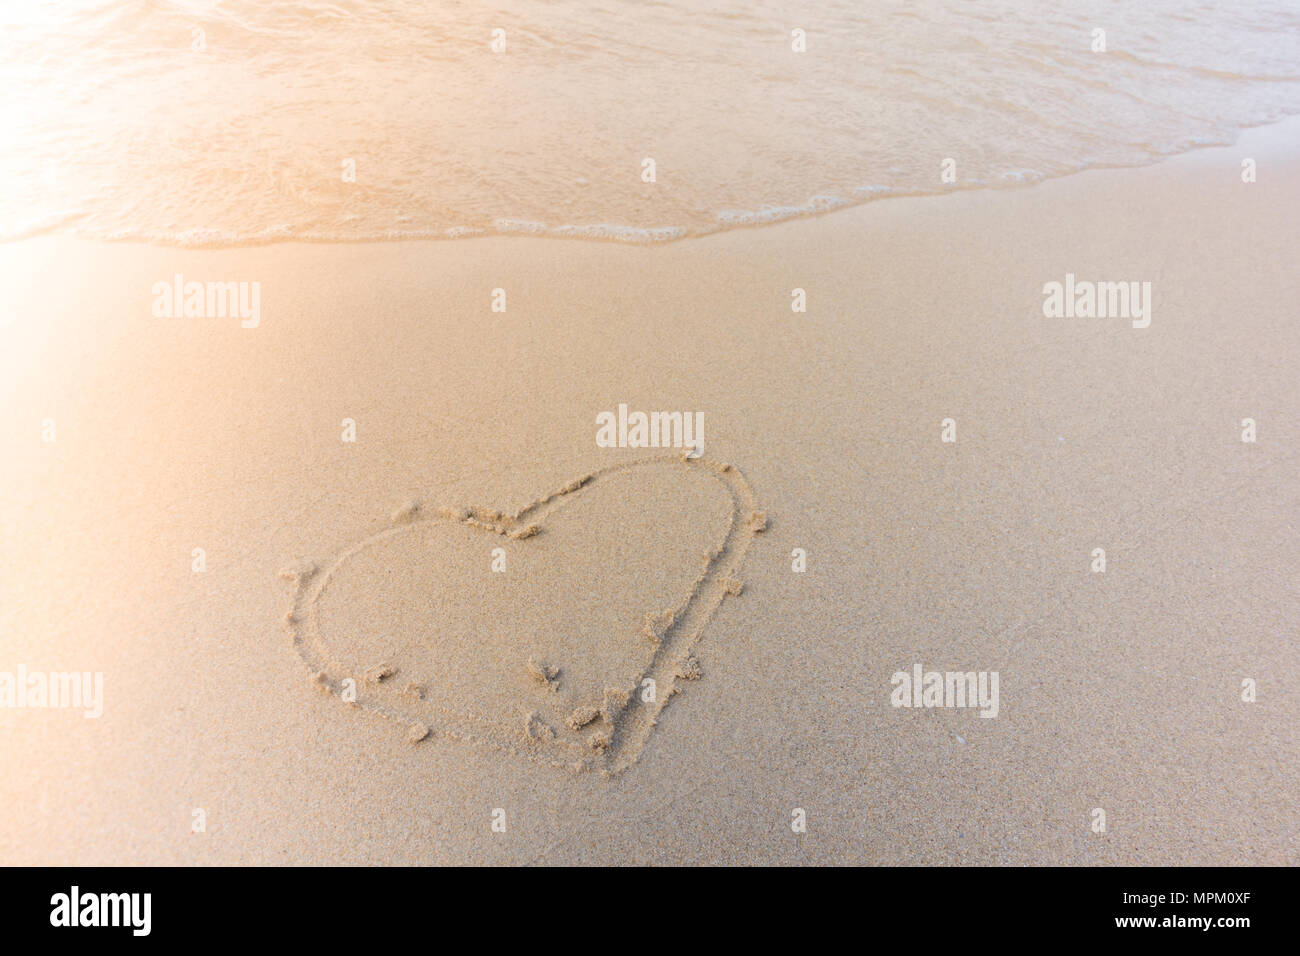 Beau fond plage avec coeur en été. Image libre de haute qualité image de la forme coeur dessiner sur le sable et la plage Banque D'Images